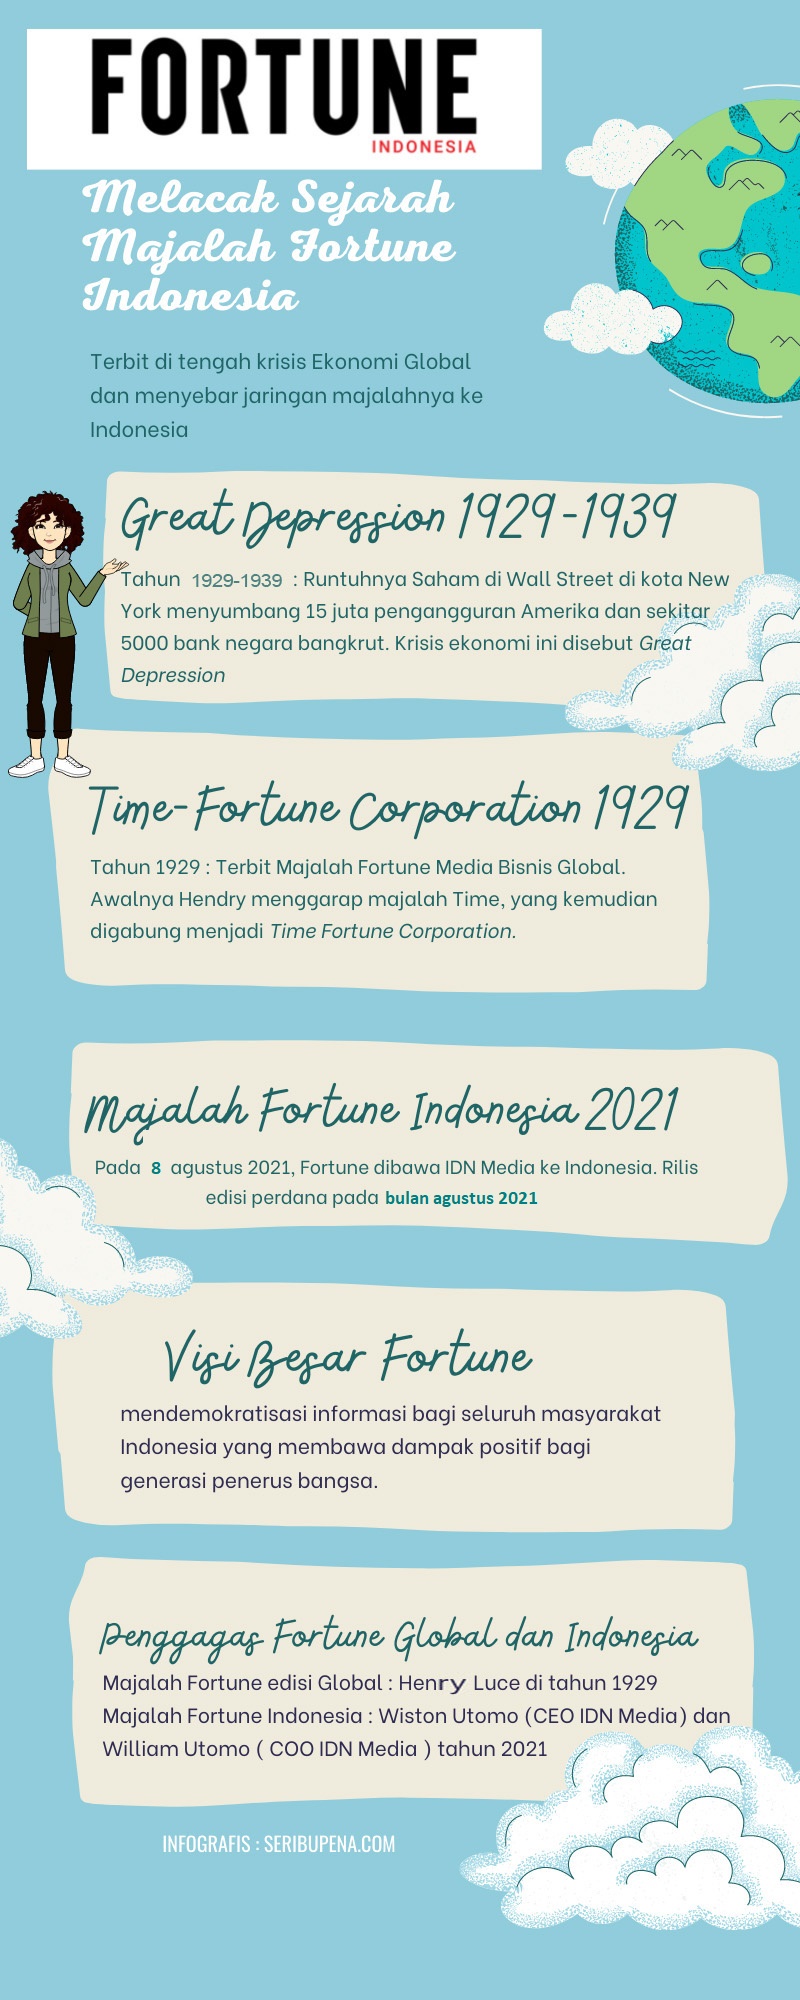 Majalah Fortune Indonesia